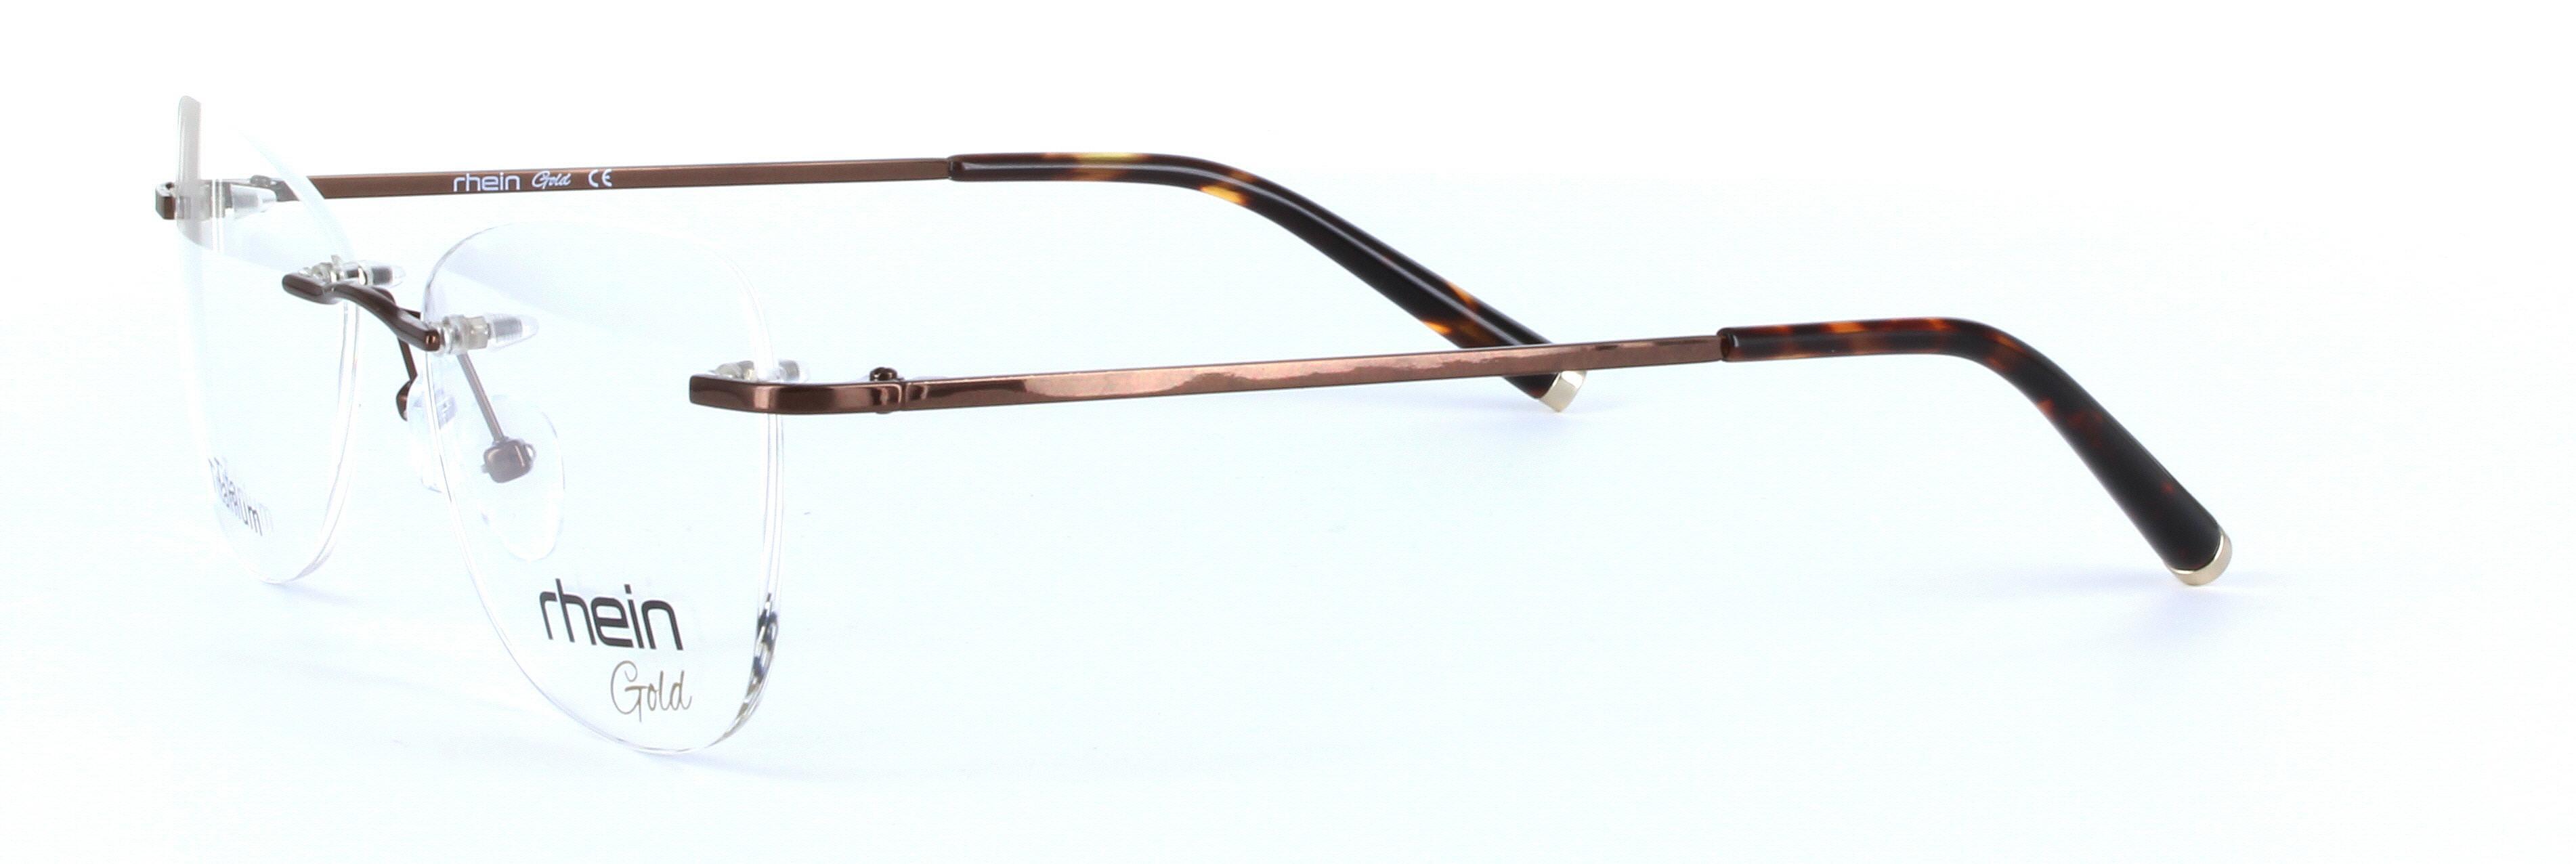 Hope Titanium Brown Rimless Rectangular Titanium Glasses - Image View 2